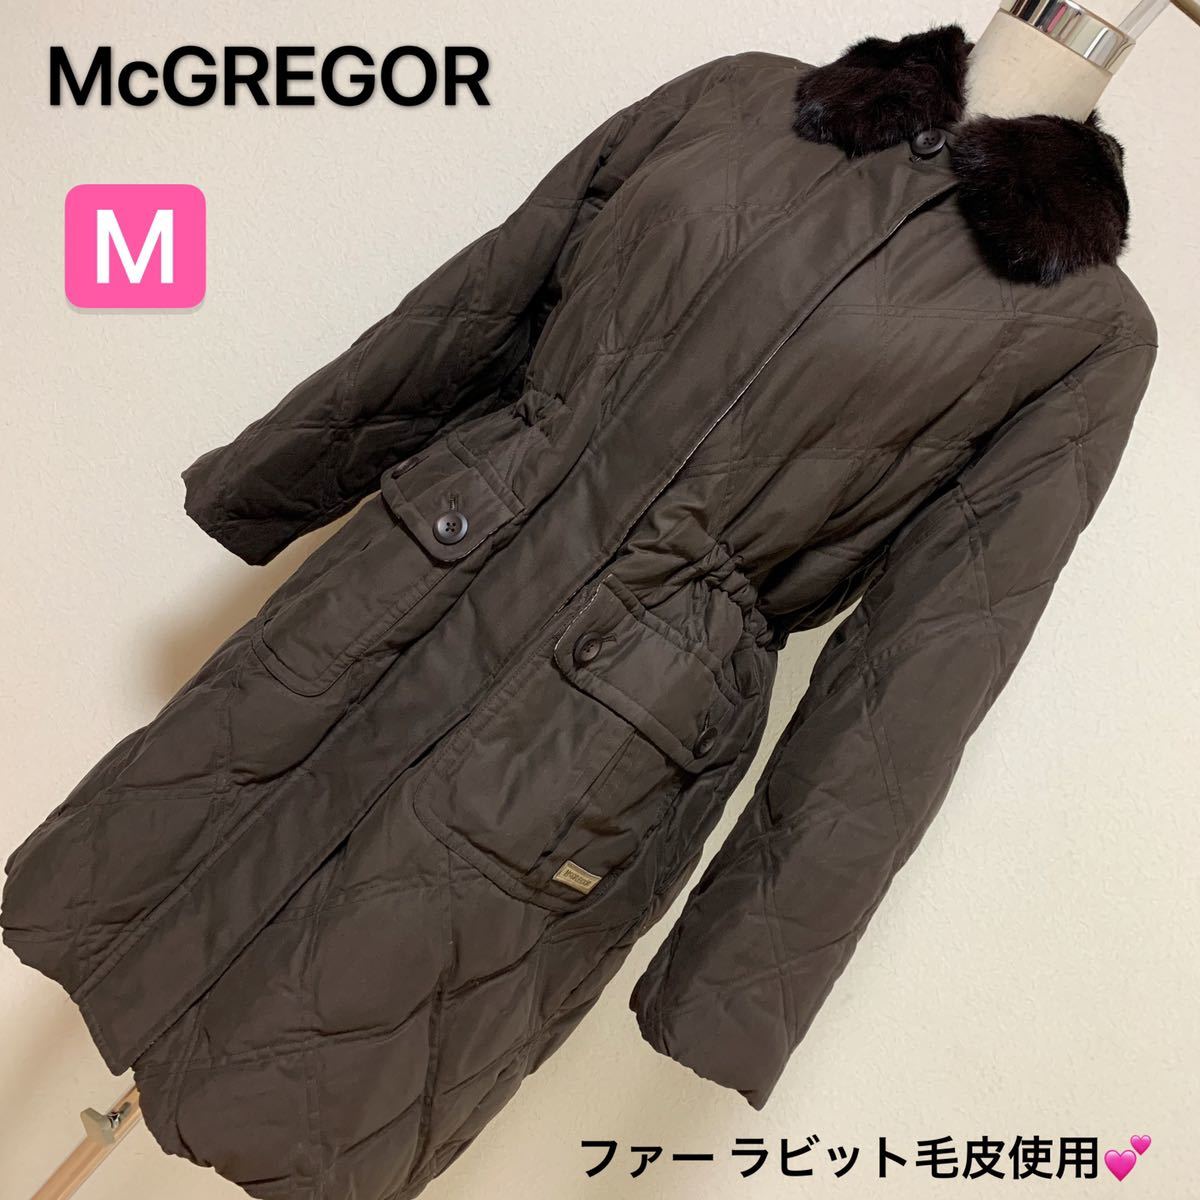 McGREGOR ロングコート、レディース 早い者勝ち 激安 素敵 ブランド 上品 可愛いおしゃれ 通学 通勤 デート 暖かい　ファー